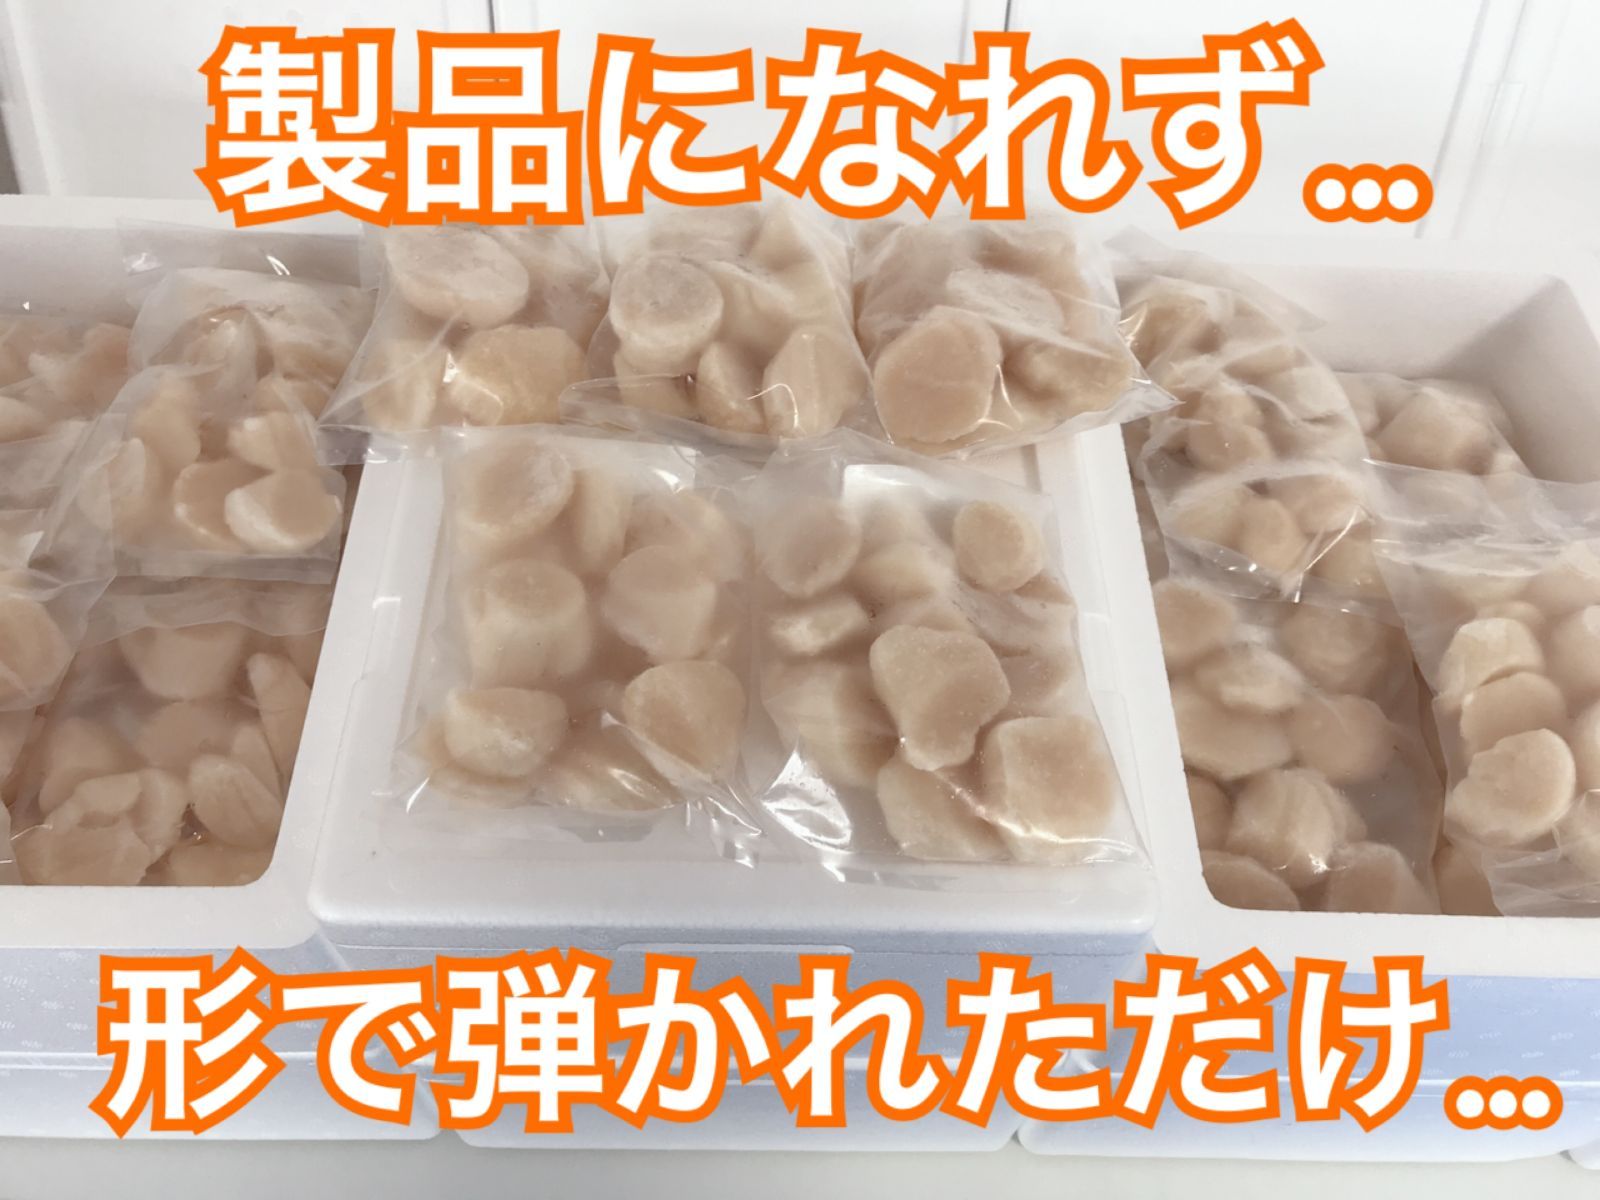 【訳あり品】北海道産ホタテ貝柱 計約750g 割れ欠けA品フレーク 小分け 冷凍-3